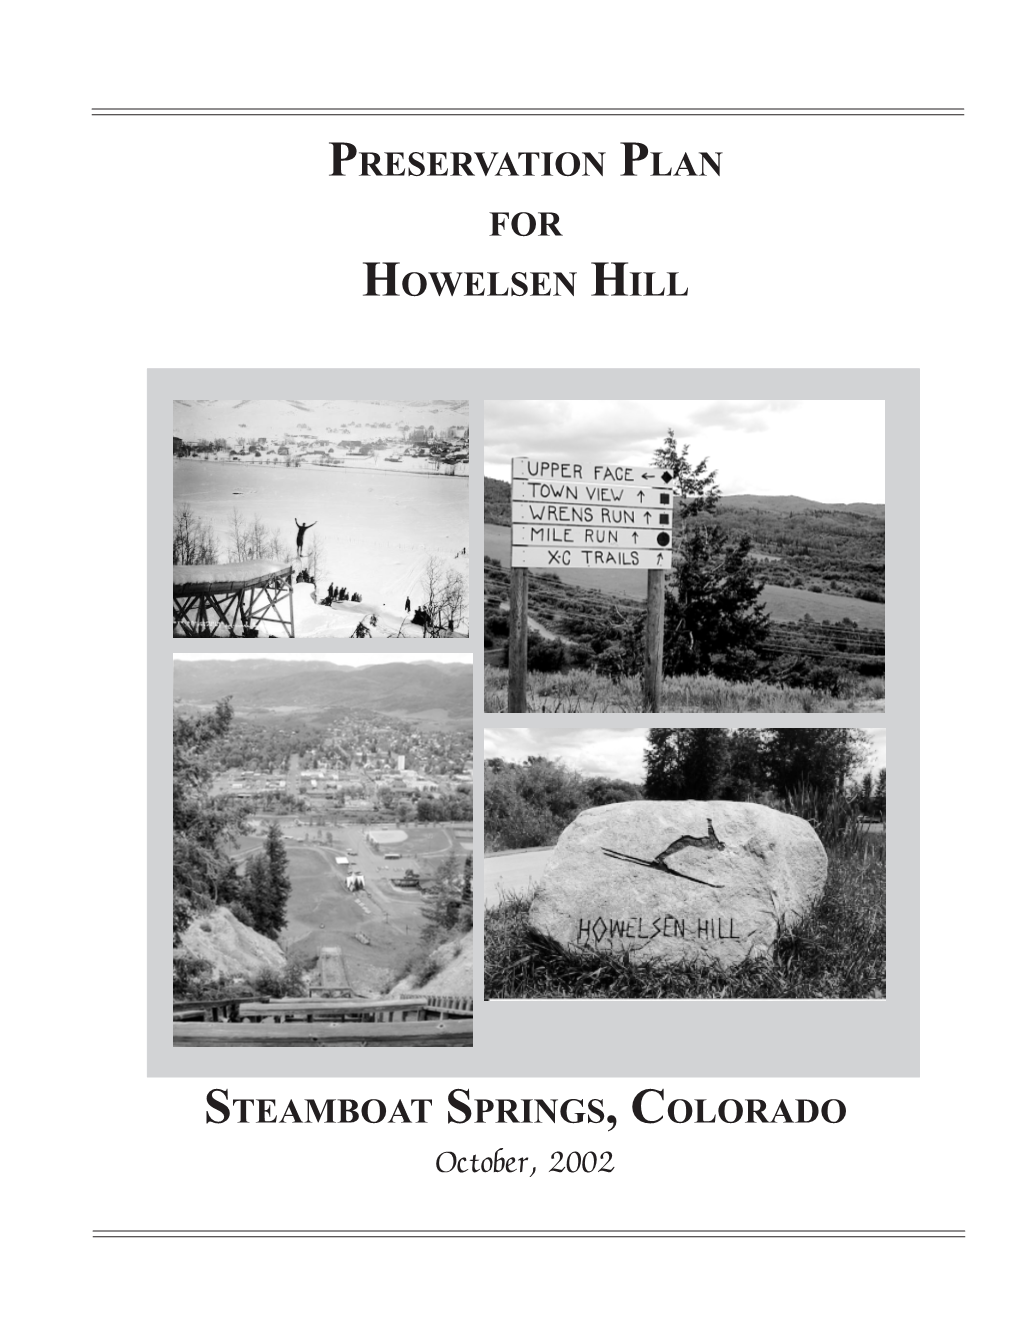 Preservation Plan for Howelsen Hill